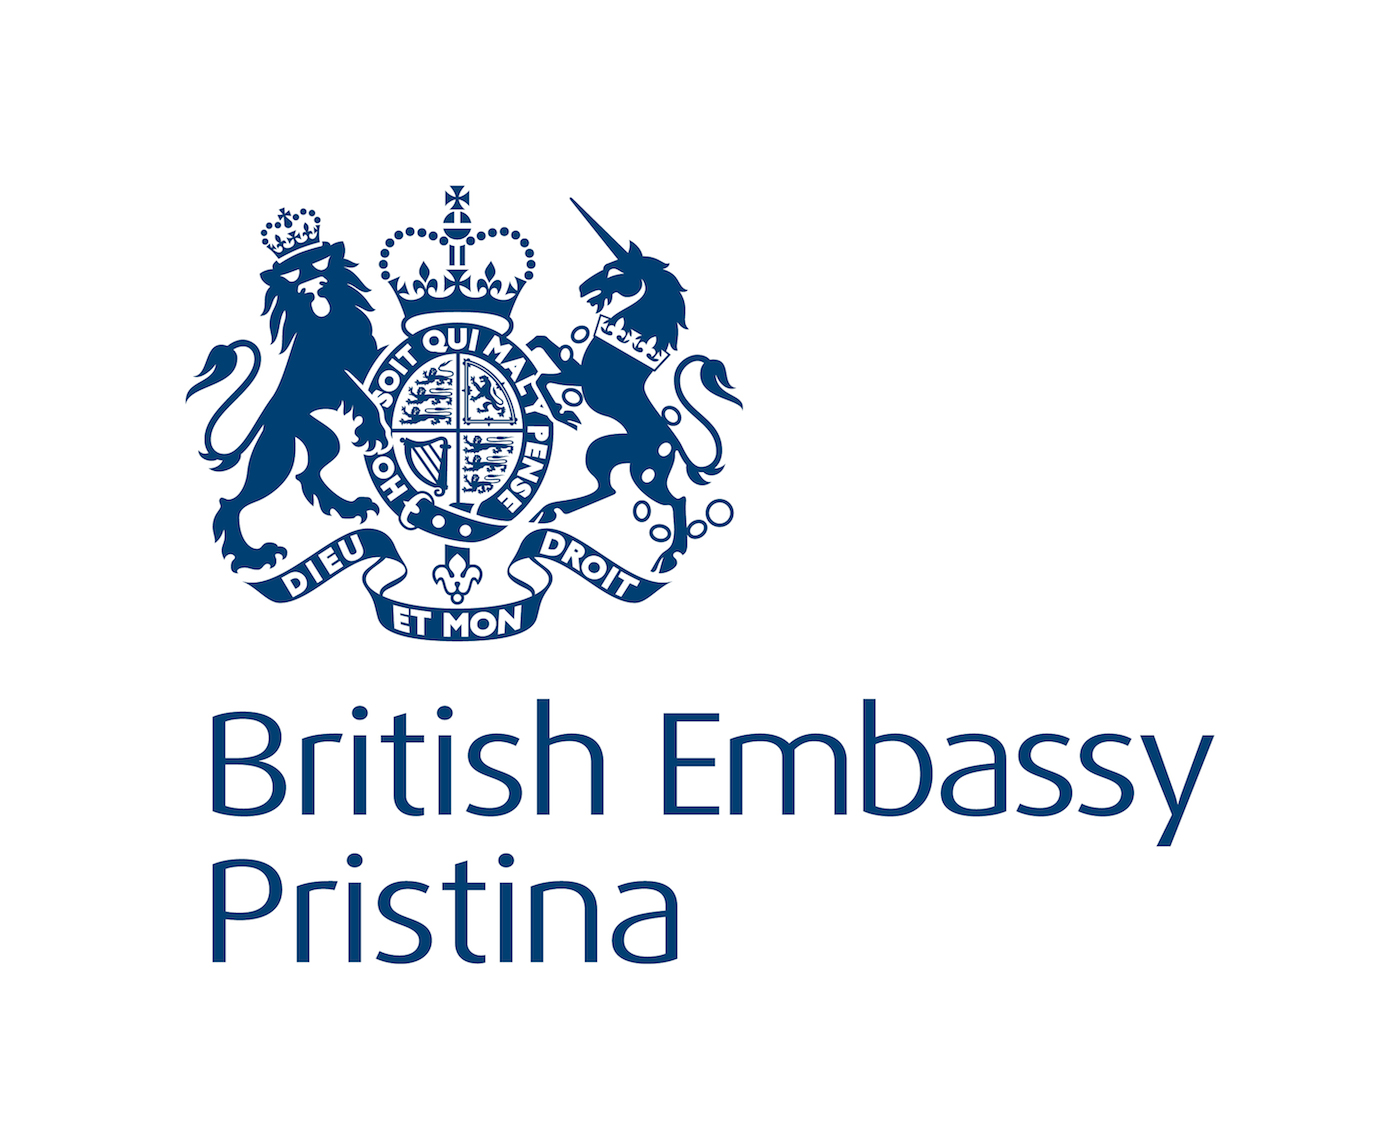 British Logo - British Embassy Logos